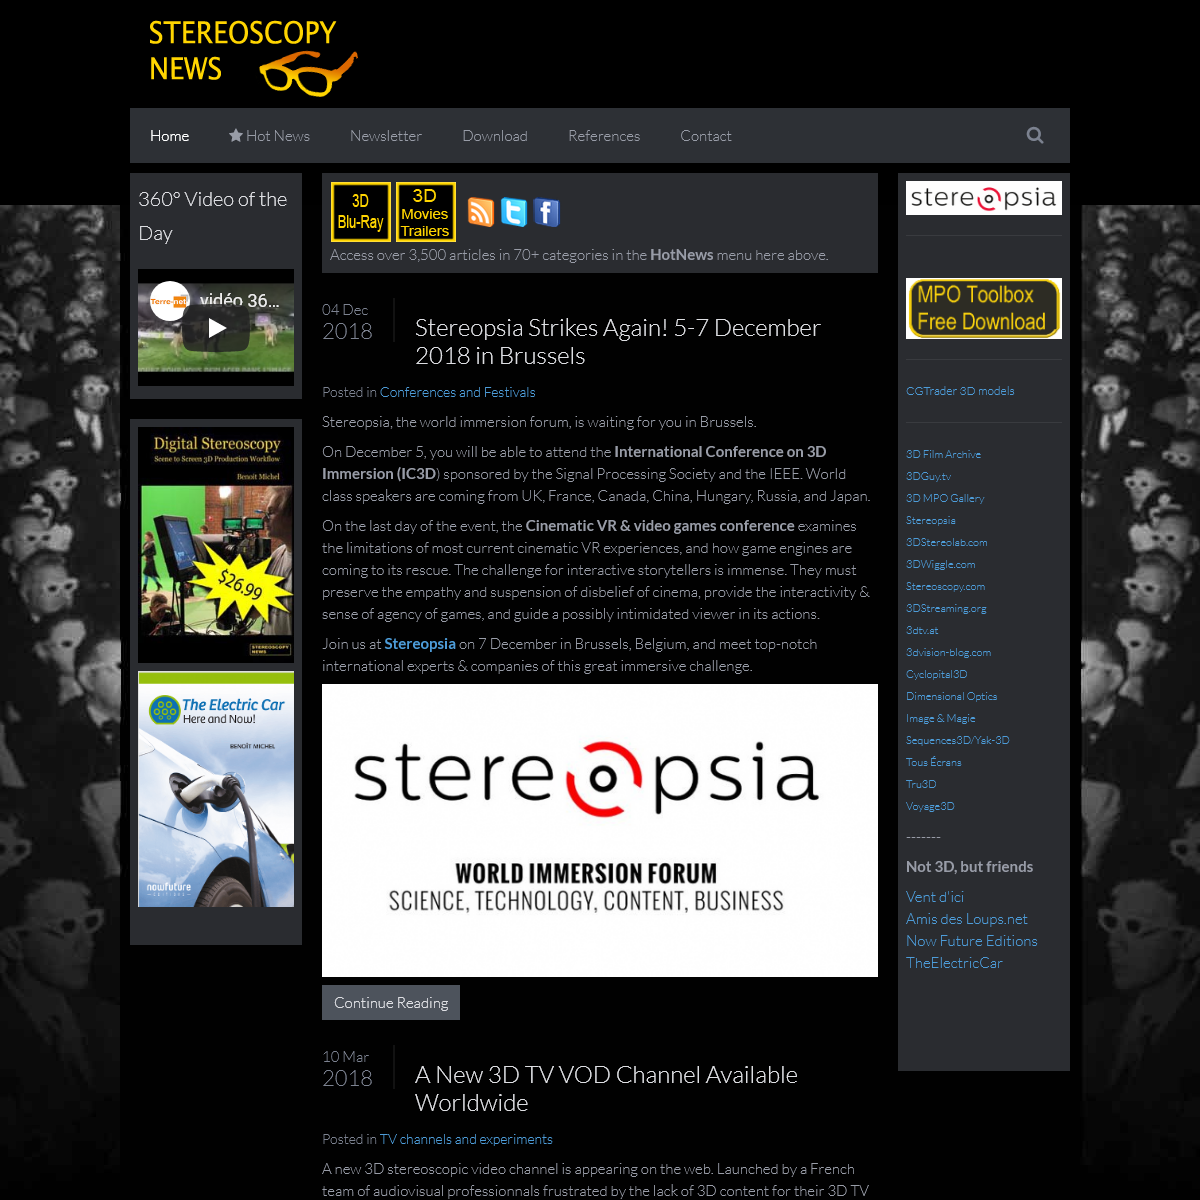 A complete backup of stereoscopynews.com